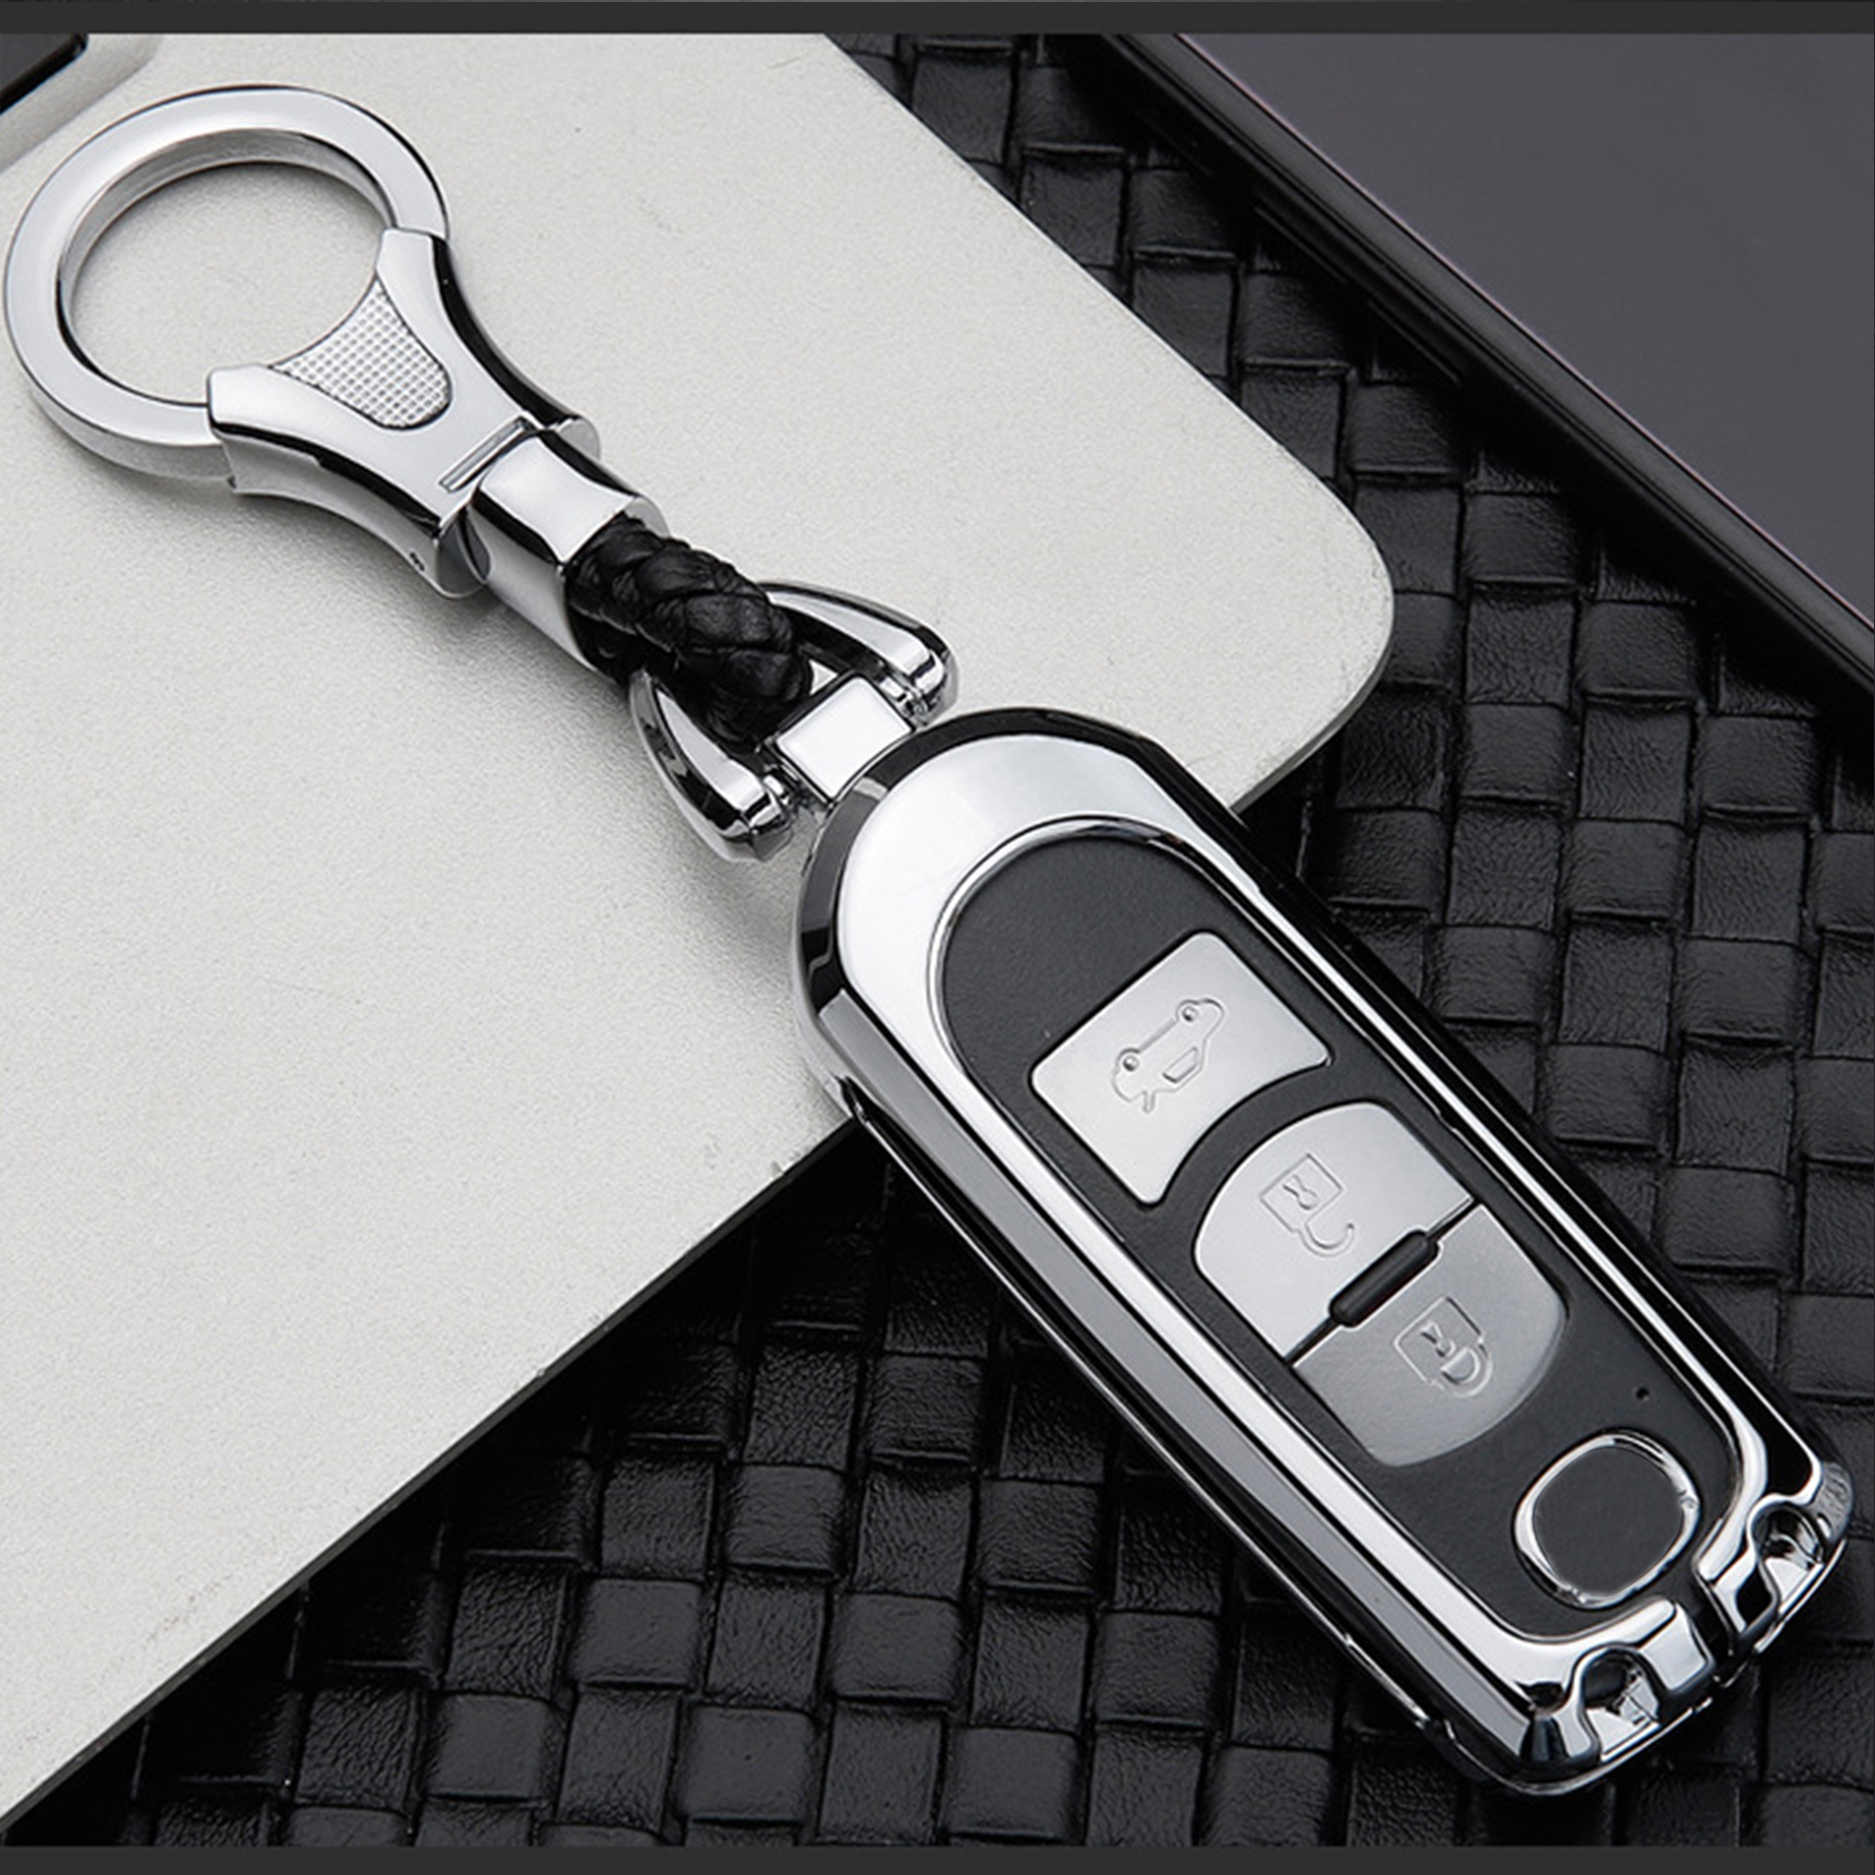 Ốp chìa khóa mazda, 3, 2, 6, cx5, cx8 chất liệu metal cao cấp, bảo vệ smartkey tuyệt đối, kiểu dáng sang trọng và hiện đại